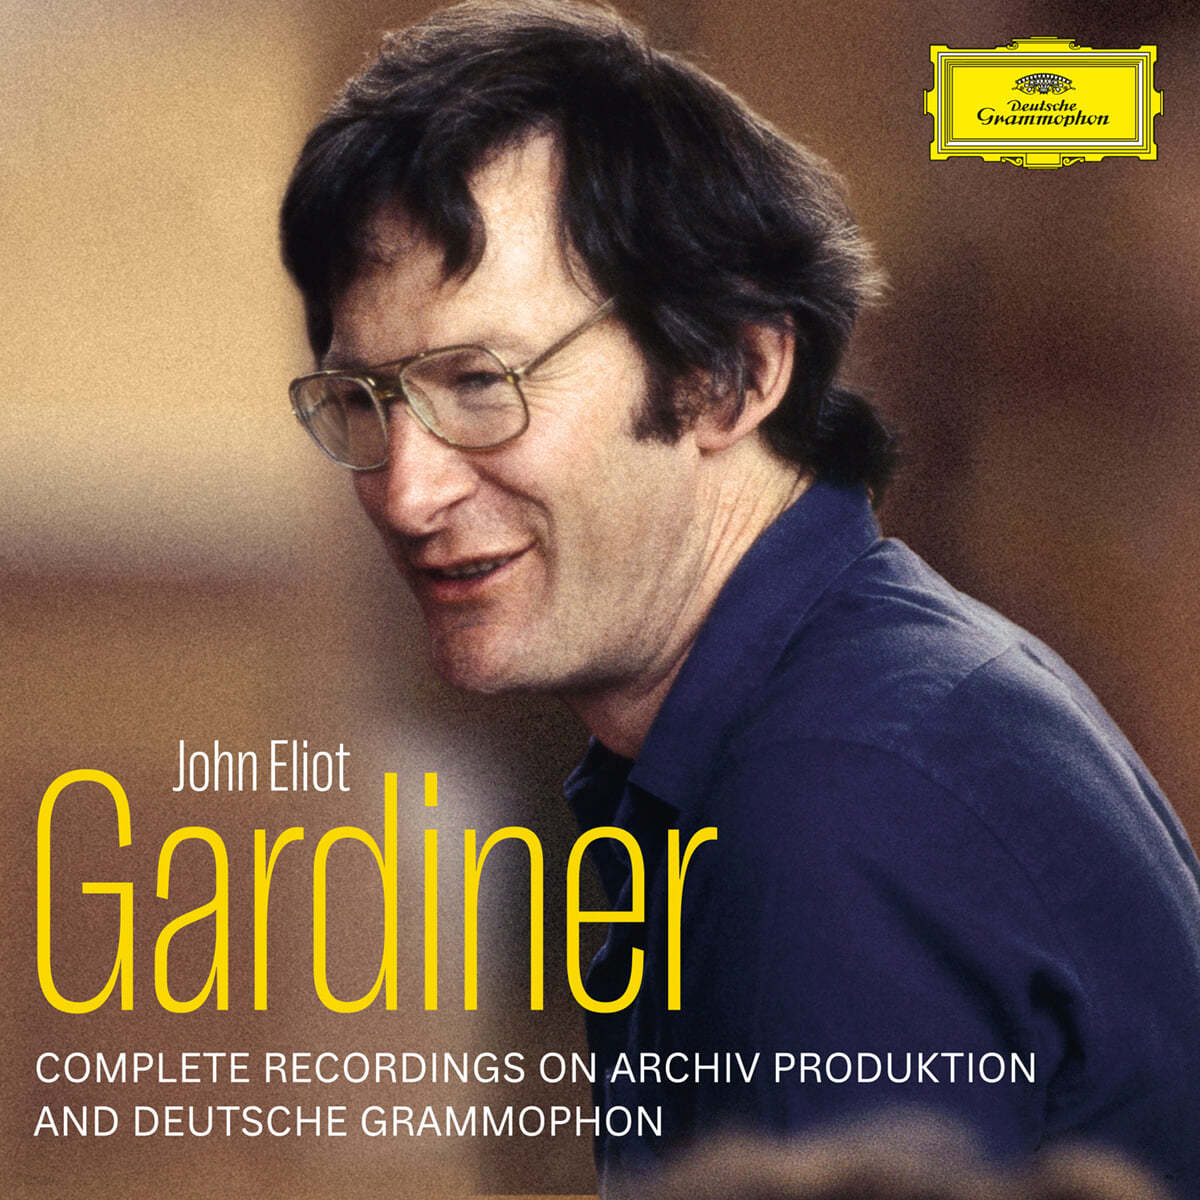 존 엘리엇 가디너 Archiv &amp; DG 전집 (Sir John Eliot Gardiner - Complete Deutsche Grammophon &amp; Archiv Produktion Recordings) 